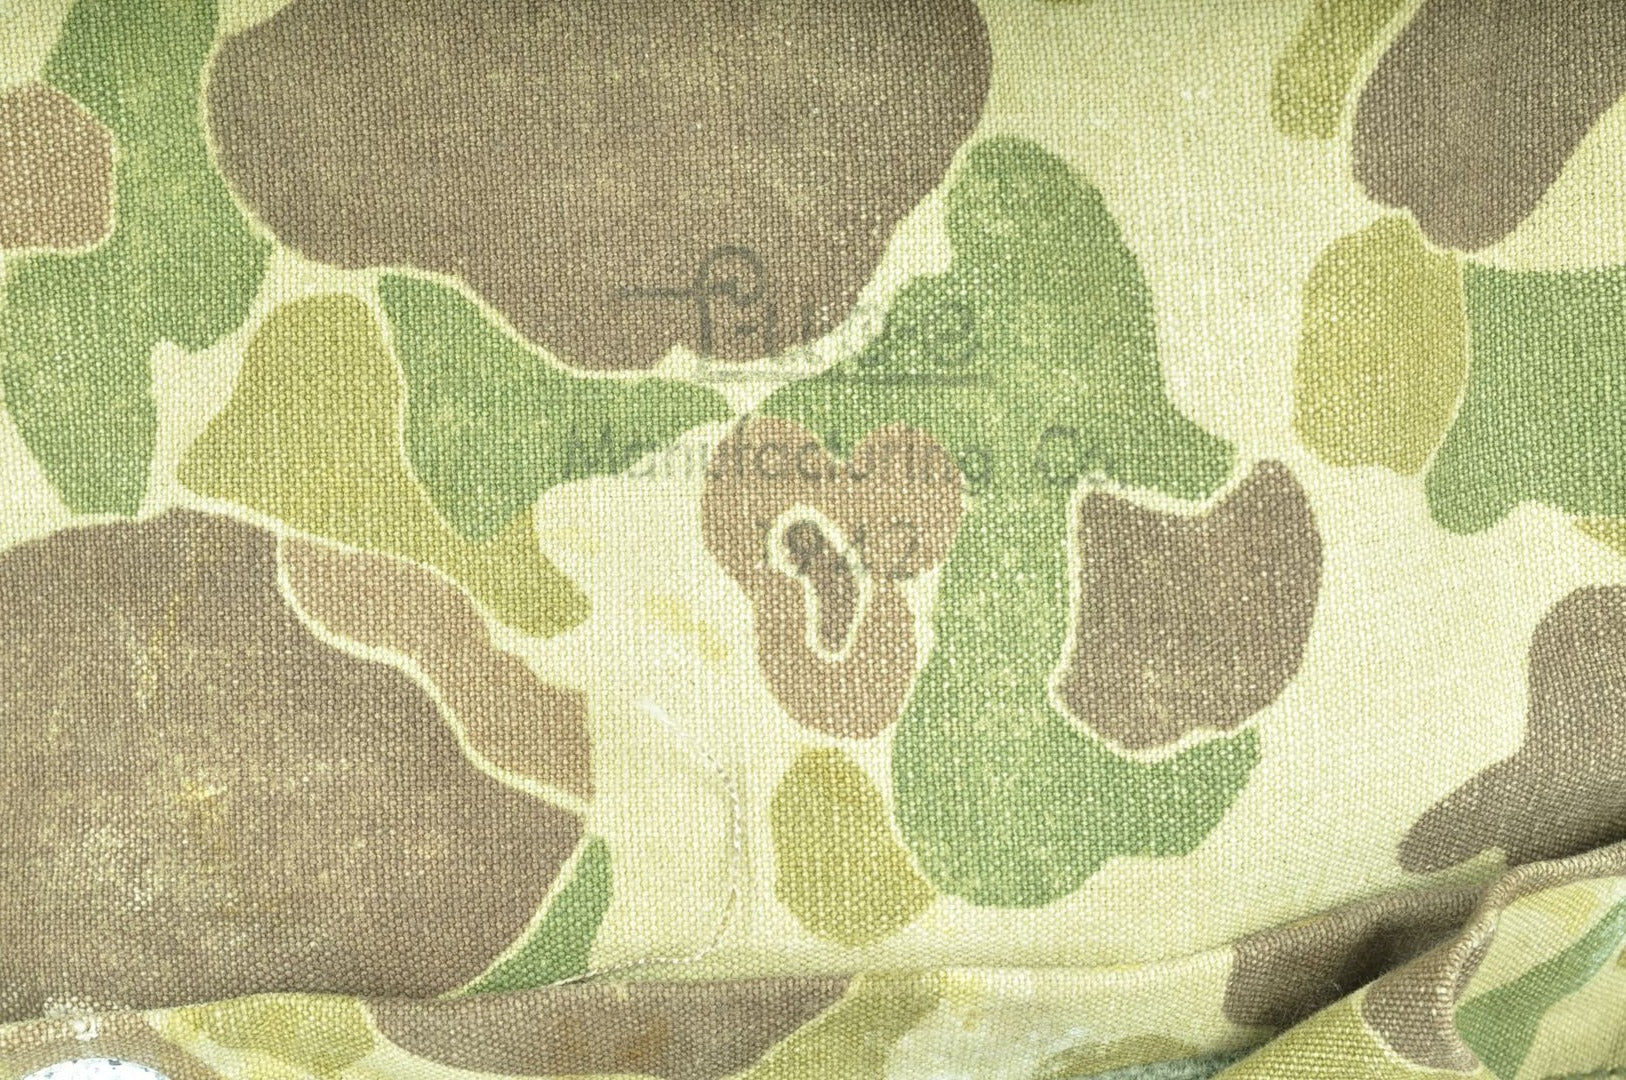 Sac à dos US Army camouflé précoce / daté 1942